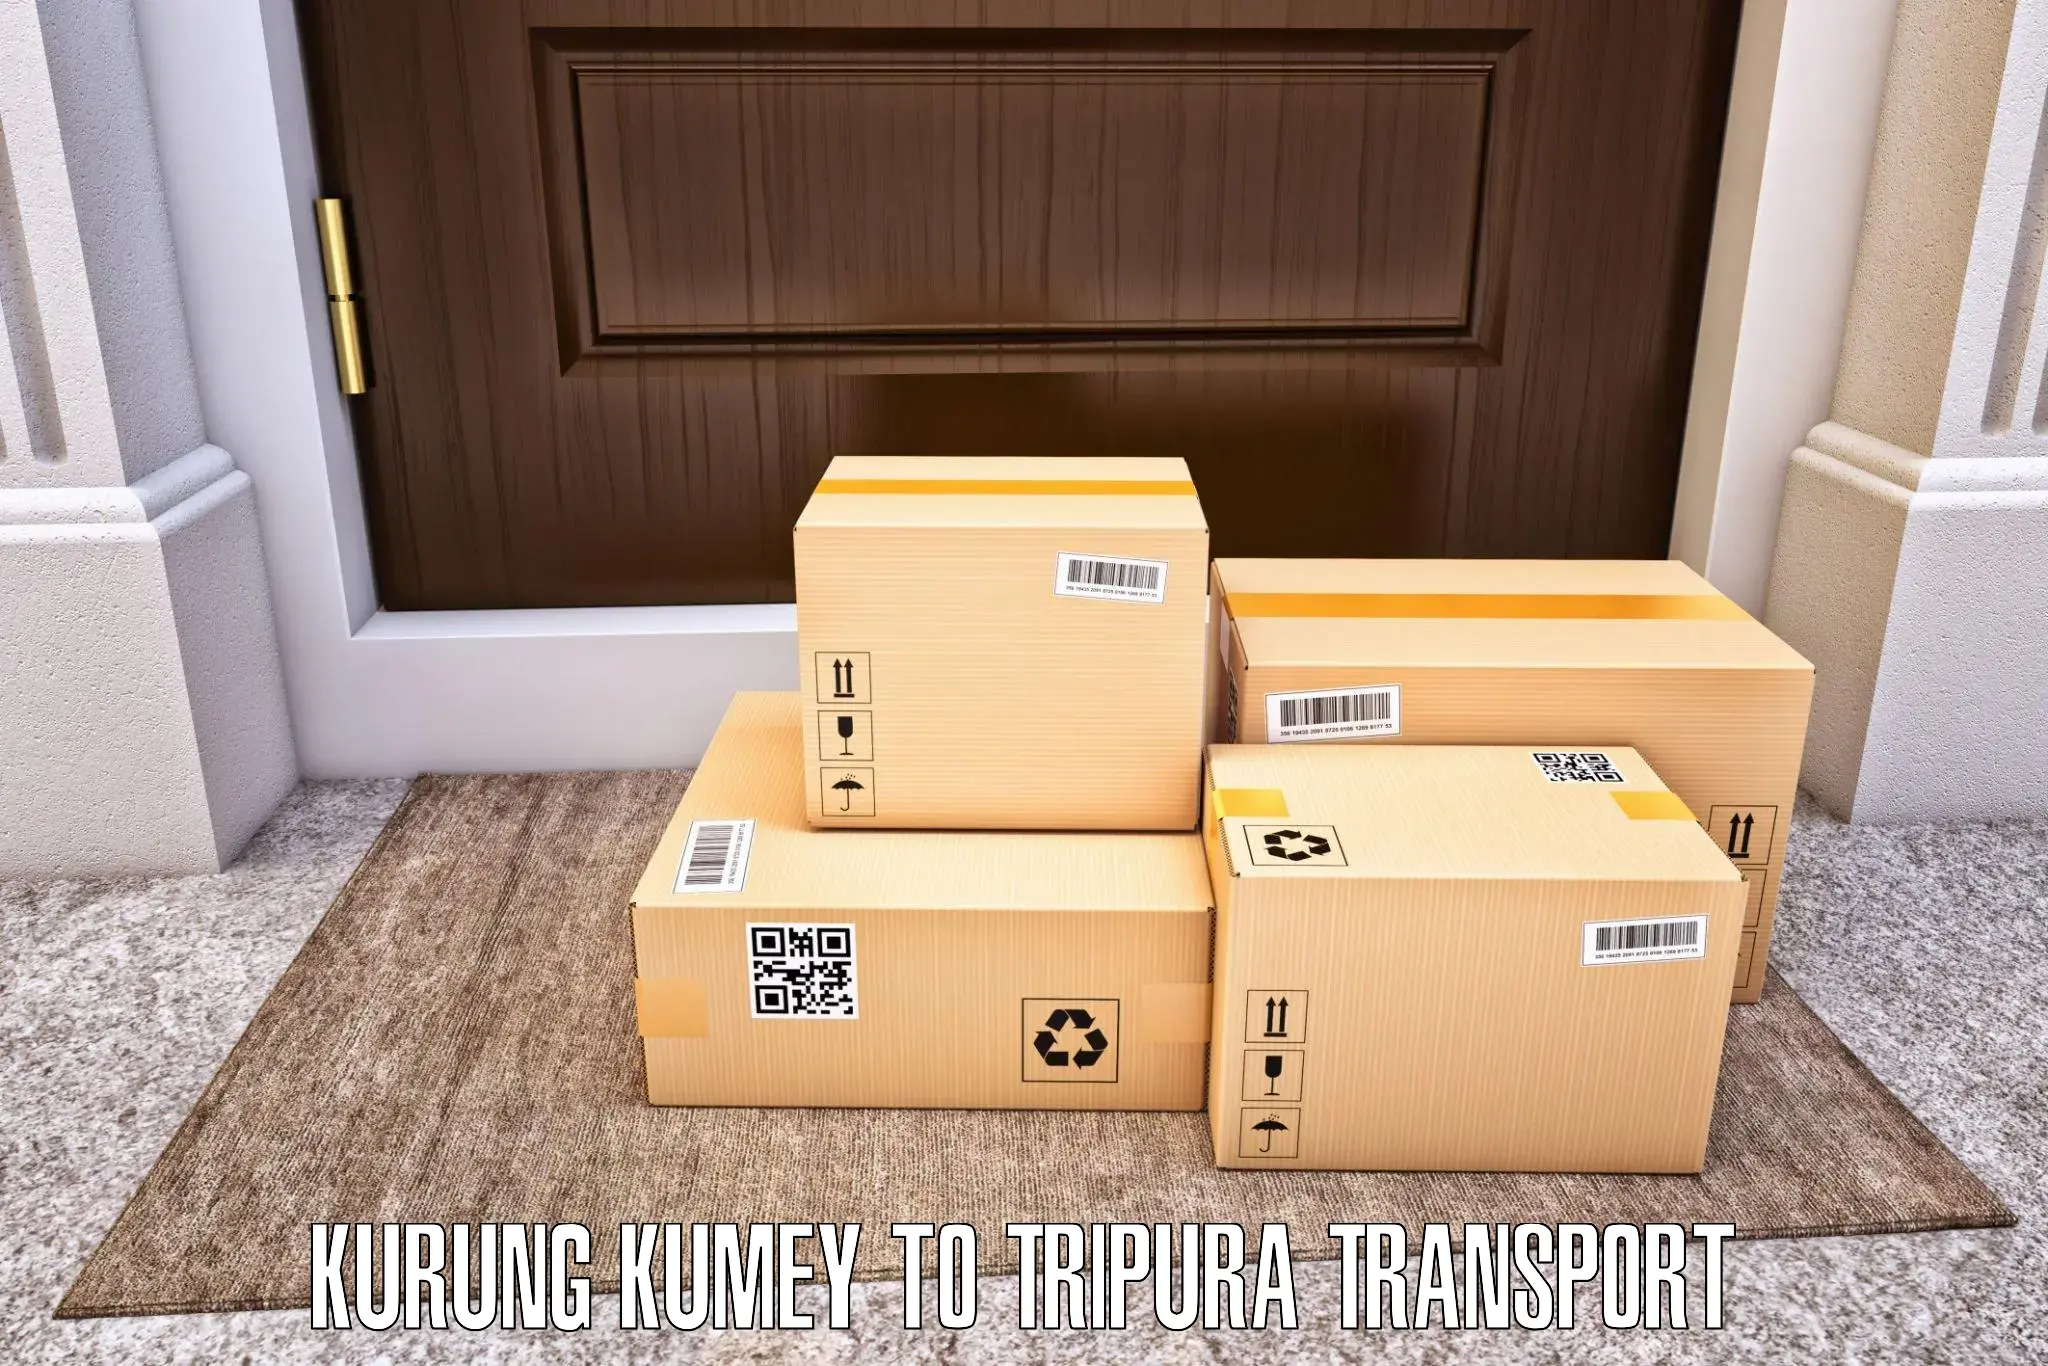 Online transport booking in Kurung Kumey to Manughat